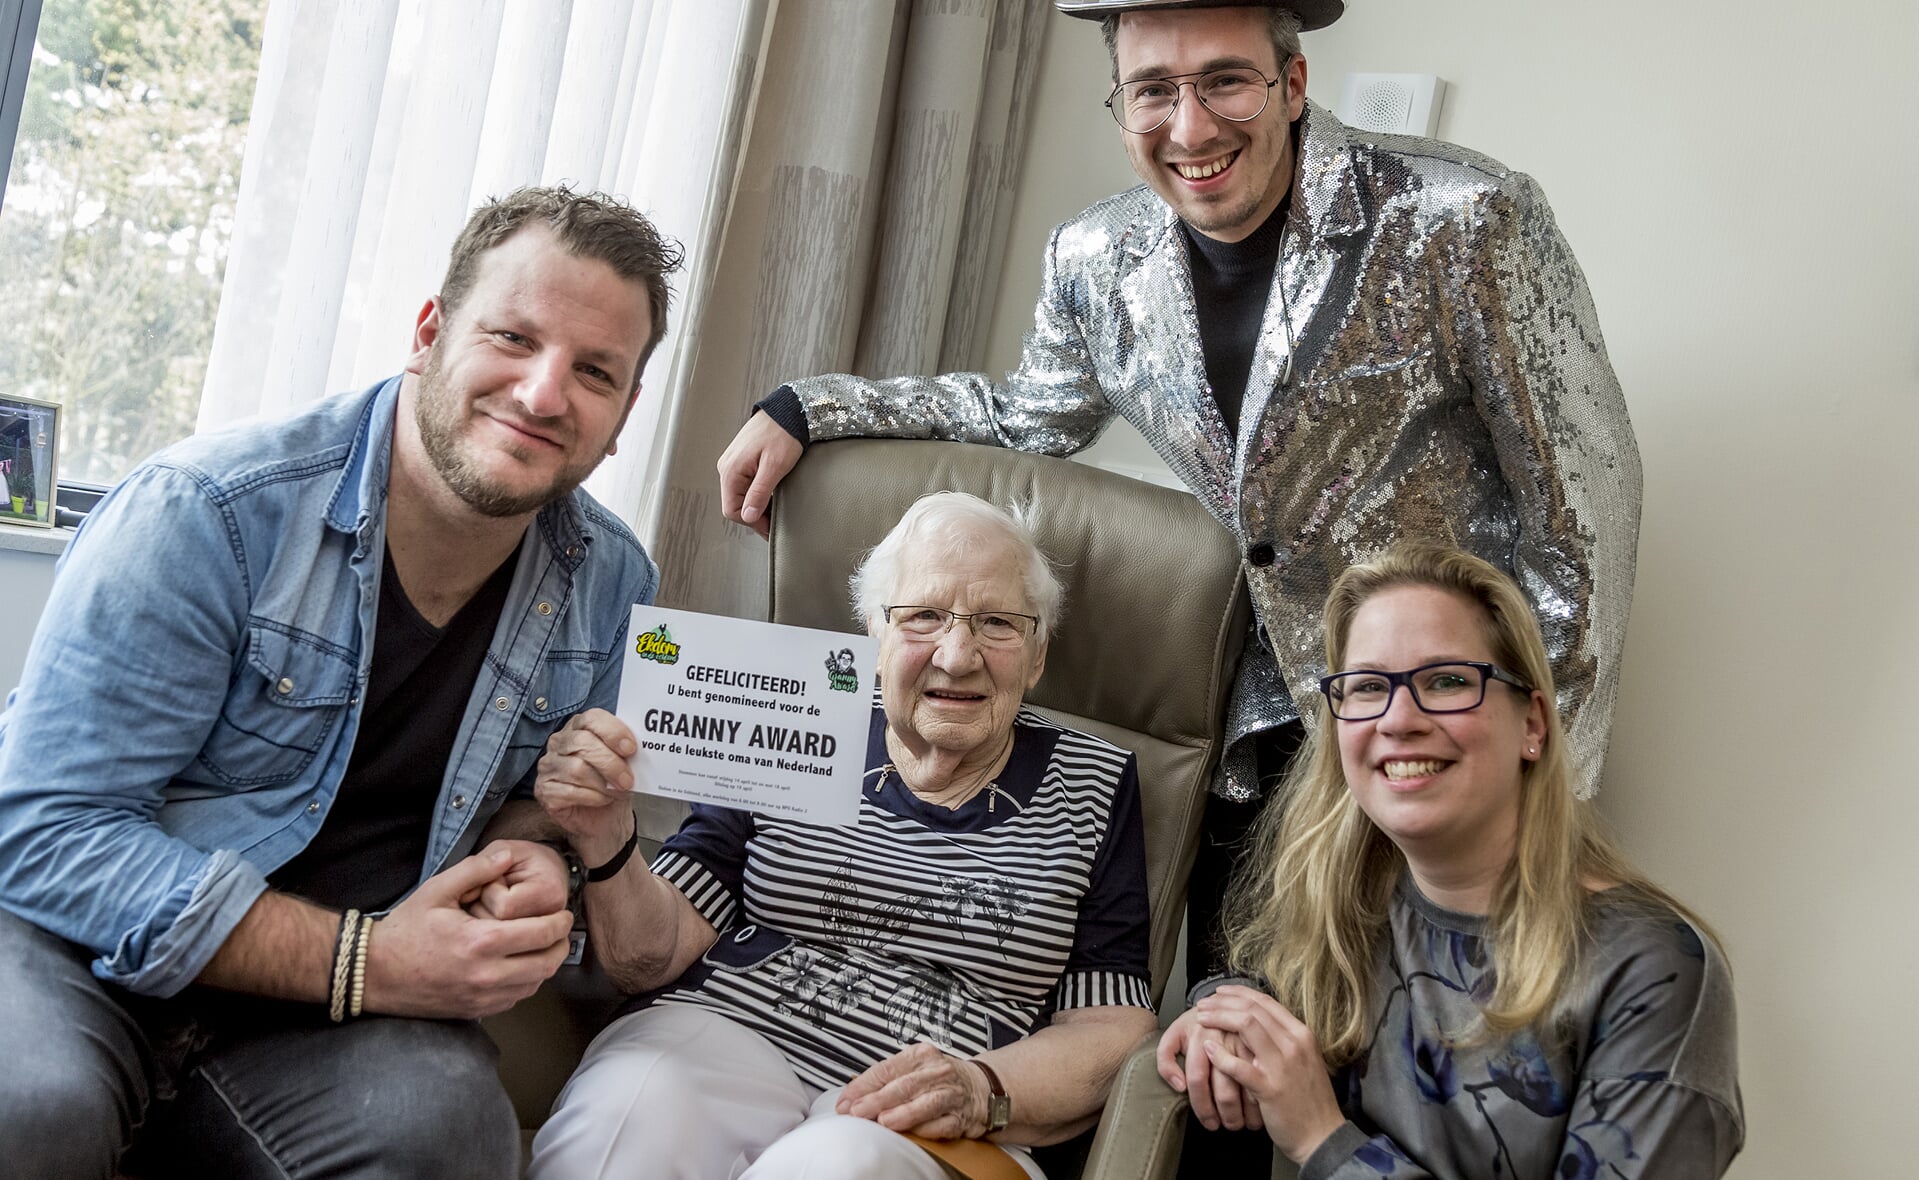 Oma Jet is genomineerd voor de Granny Award van NPO Radio 2. Van links naar rechts: kleinzoon René van den Bosch, Jet Ketelaars, radiodeejay Frank van 't Hof en kleindochter Yvon van den Bosch. (Foto: Peter de Koning).